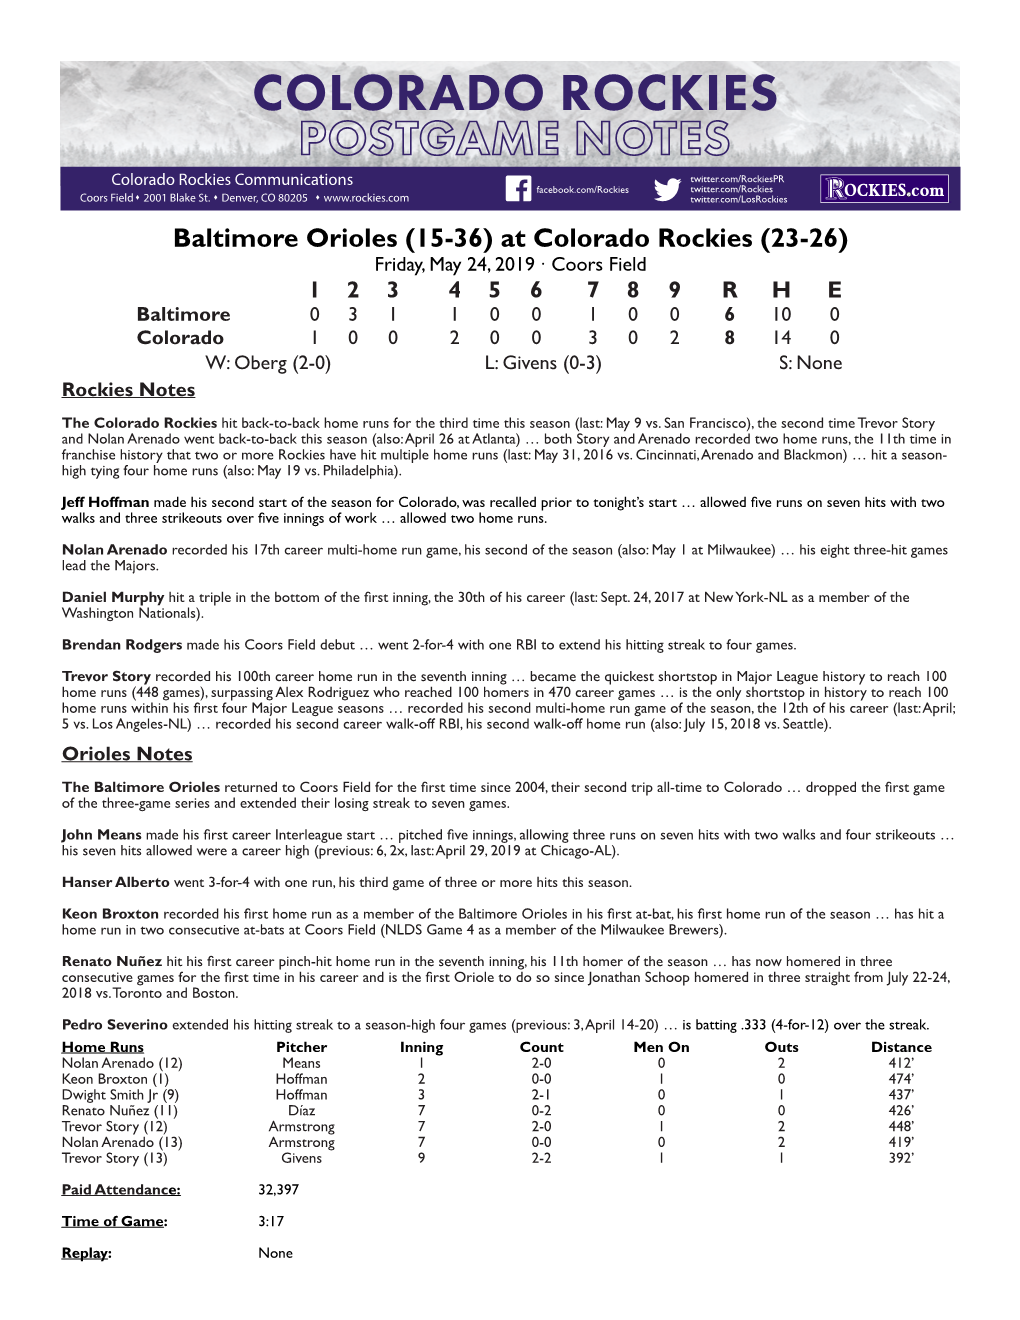 Baltimore Orioles (15-36) at Colorado Rockies (23-26)